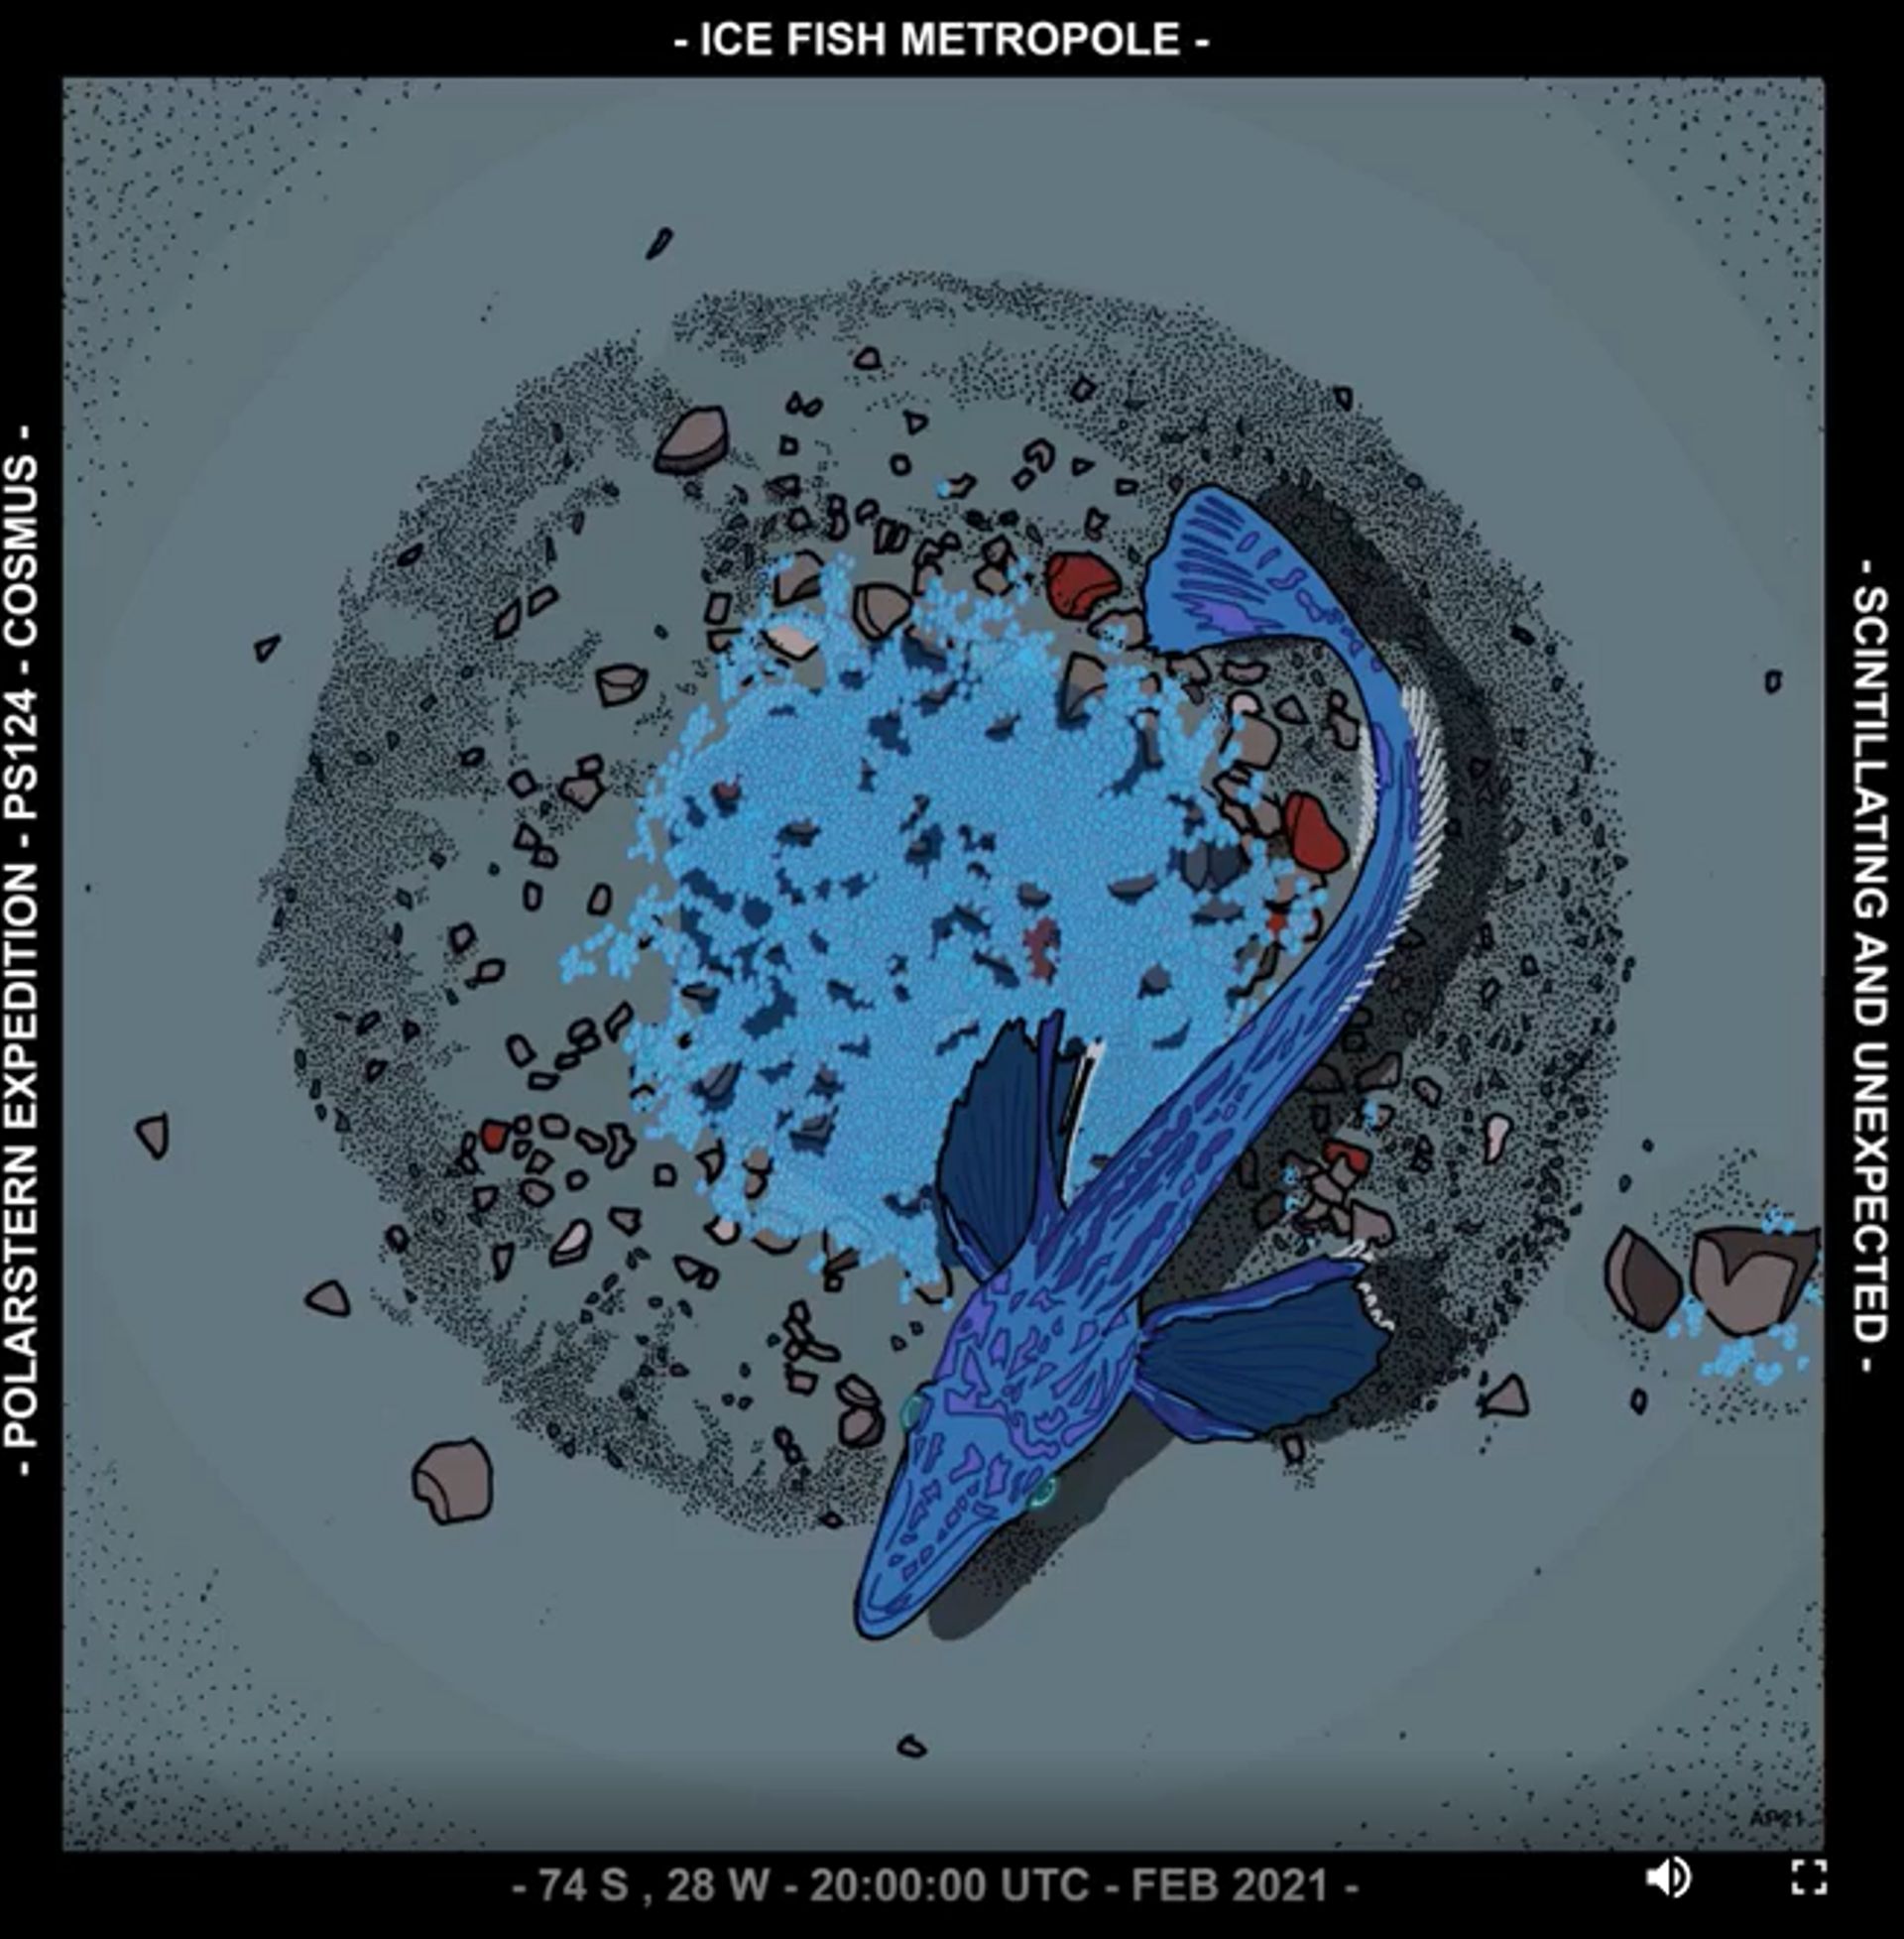 Dessin d'un nid de poisson des glaces de Jonah, parue dans la revue Current biology 